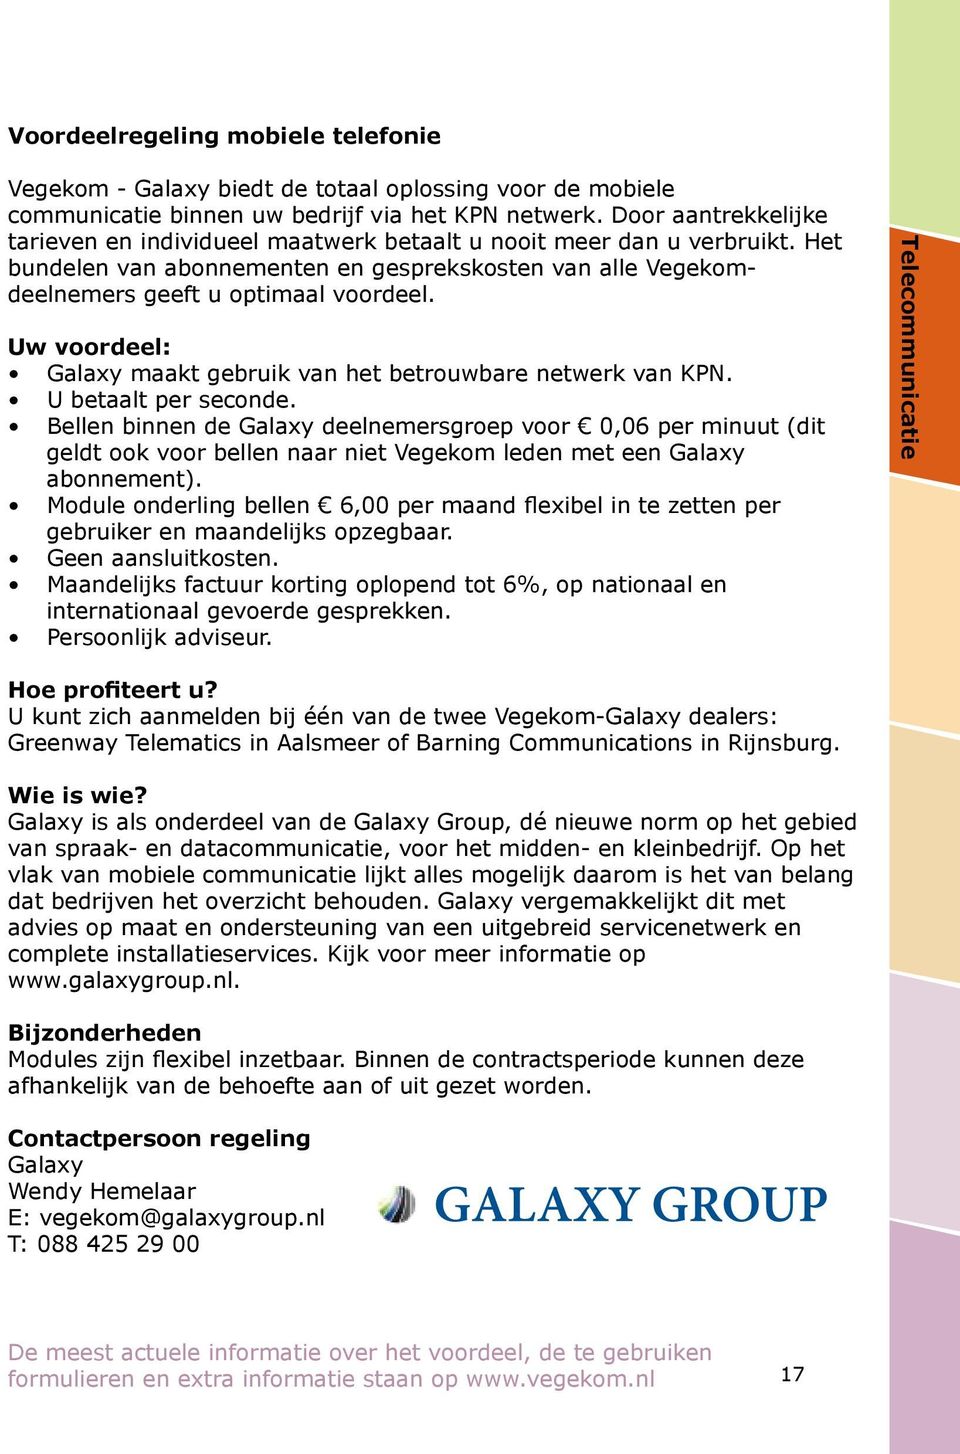 Uw voordeel: Galaxy maakt gebruik van het betrouwbare netwerk van KPN. U betaalt per seconde.